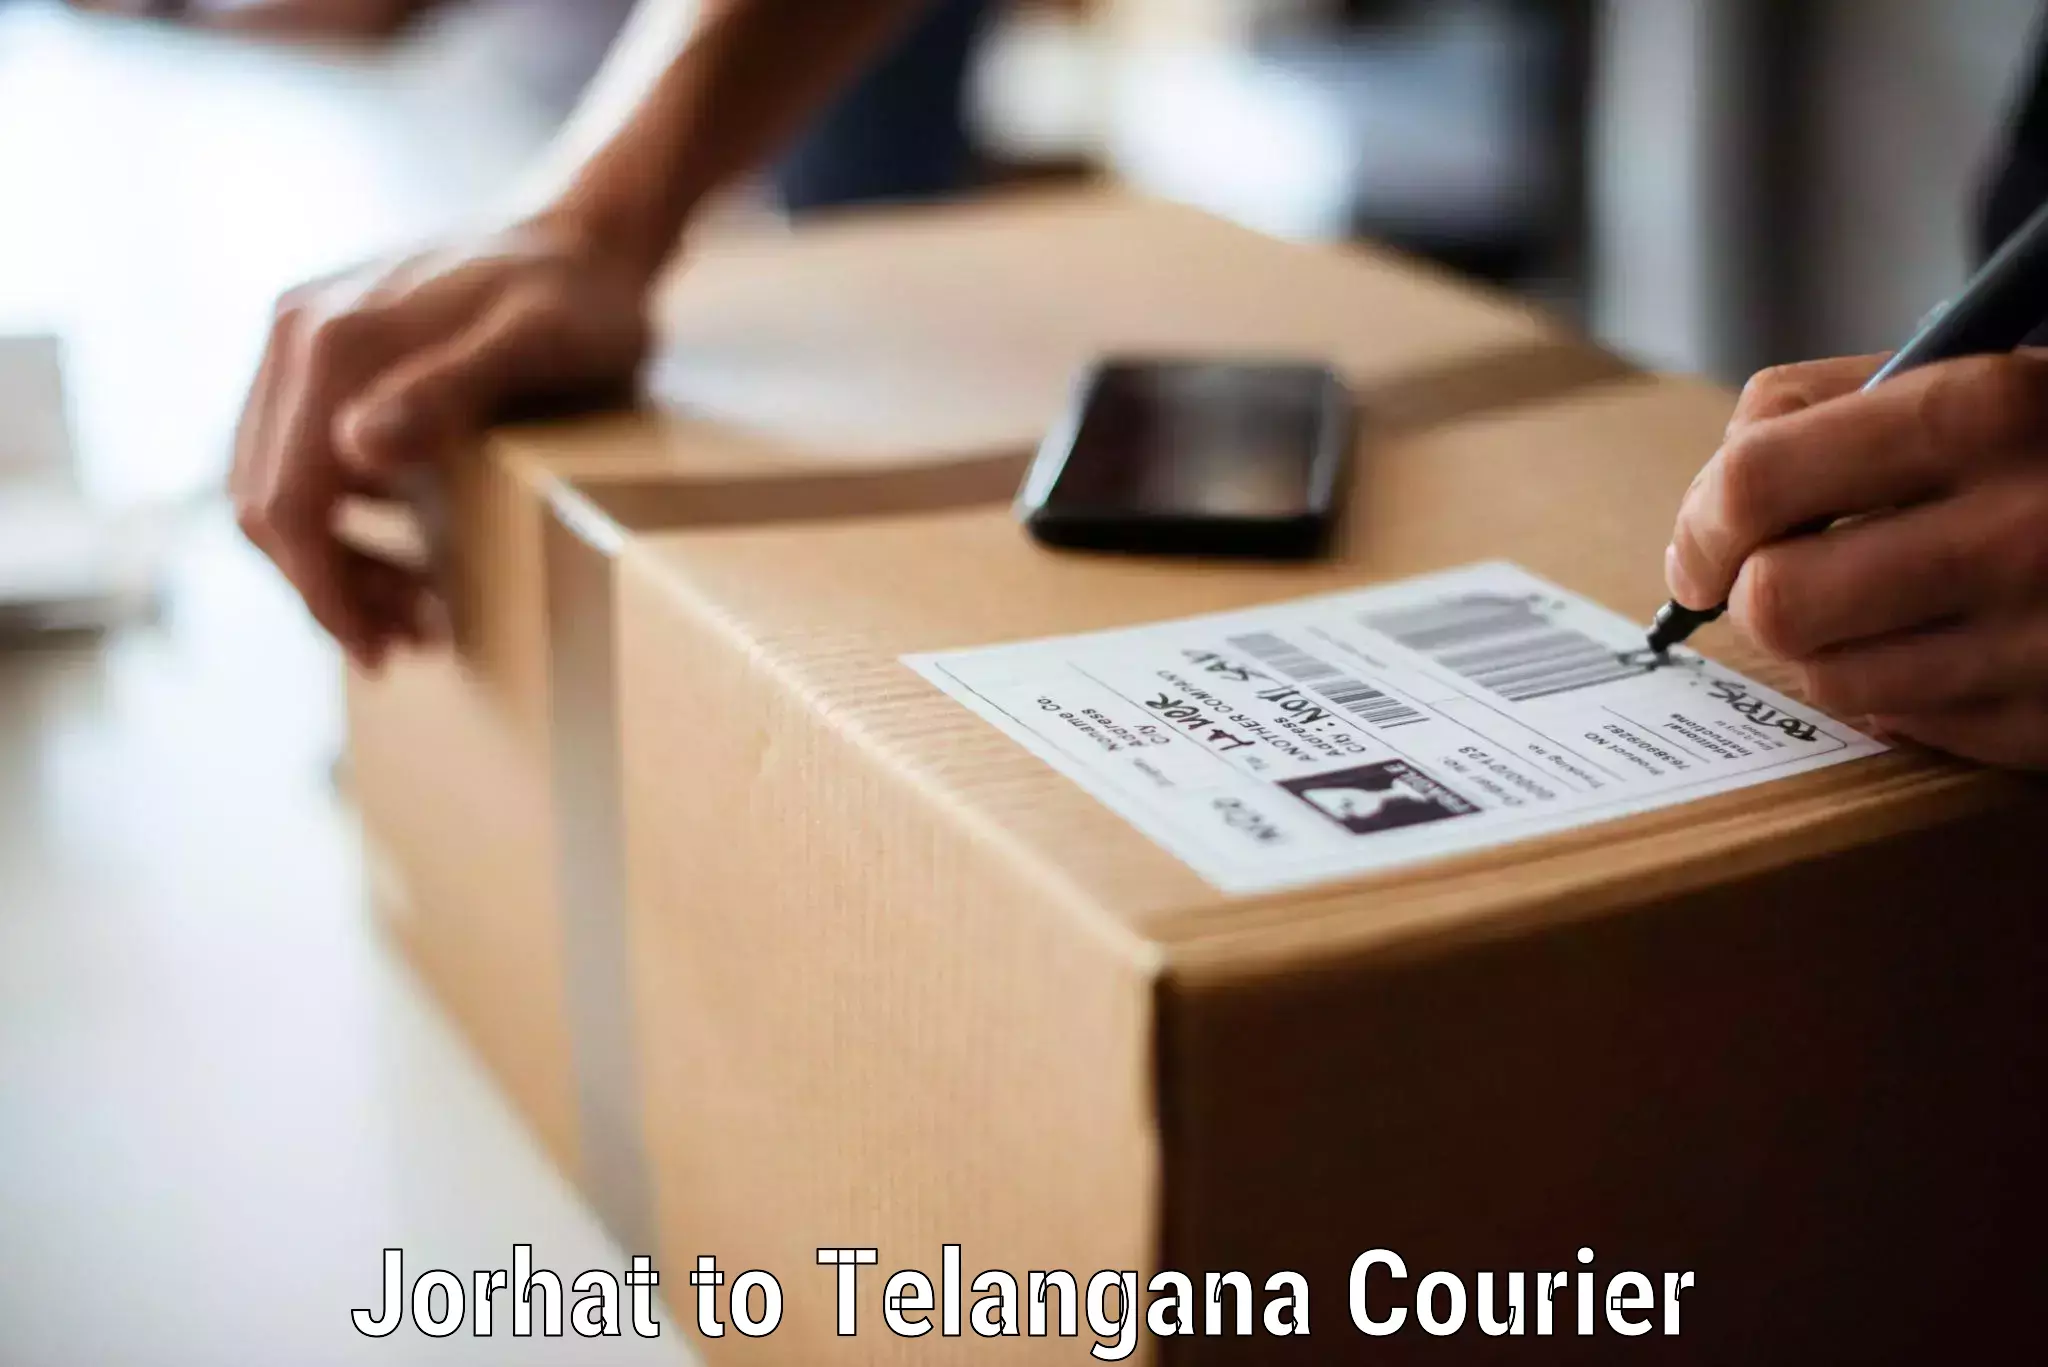 Furniture moving experts Jorhat to Nalgonda